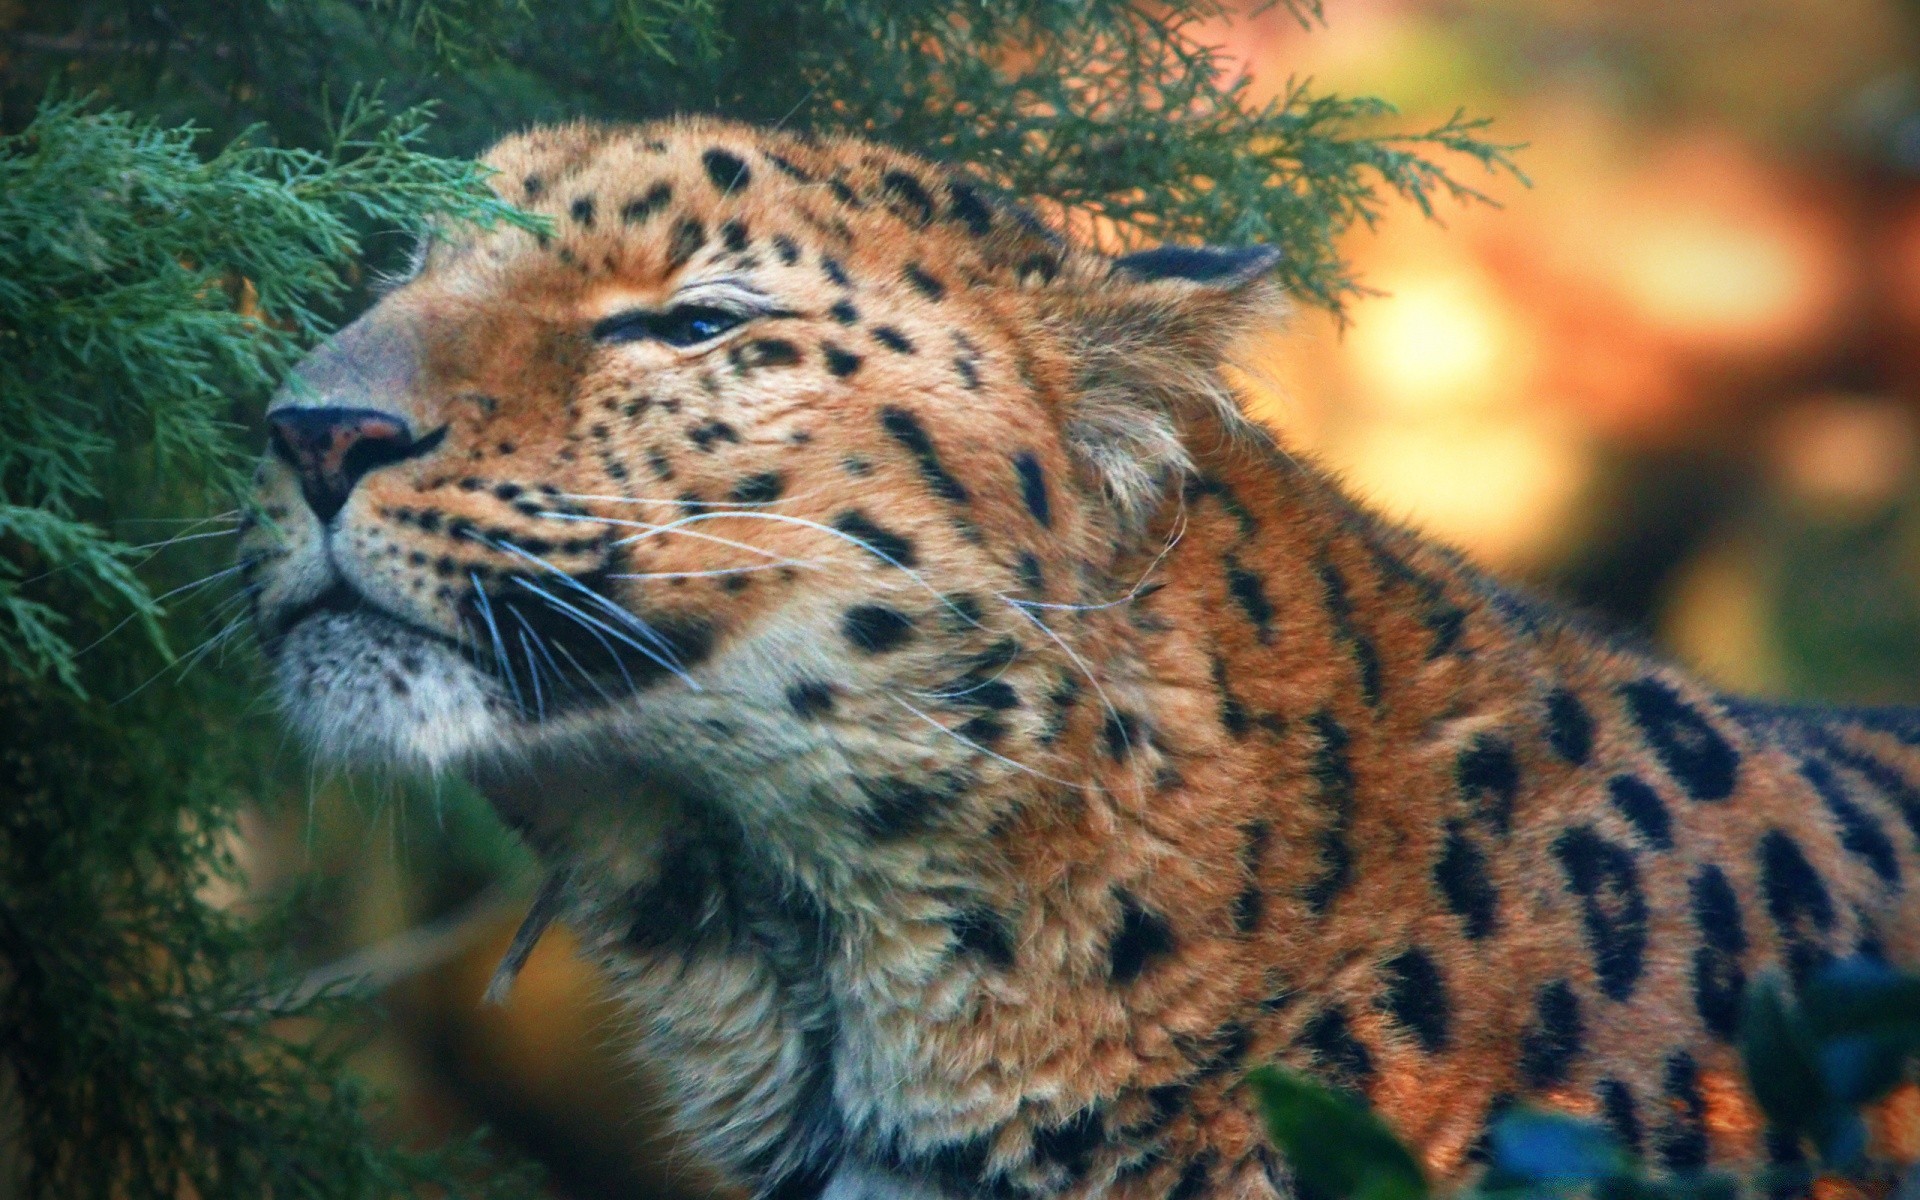 животные кошка дикой природы млекопитающее леопард хищник природа зоопарк дикий охотник животное мясоед мех тигр сафари большой опасность на открытом воздухе джунгли пантера